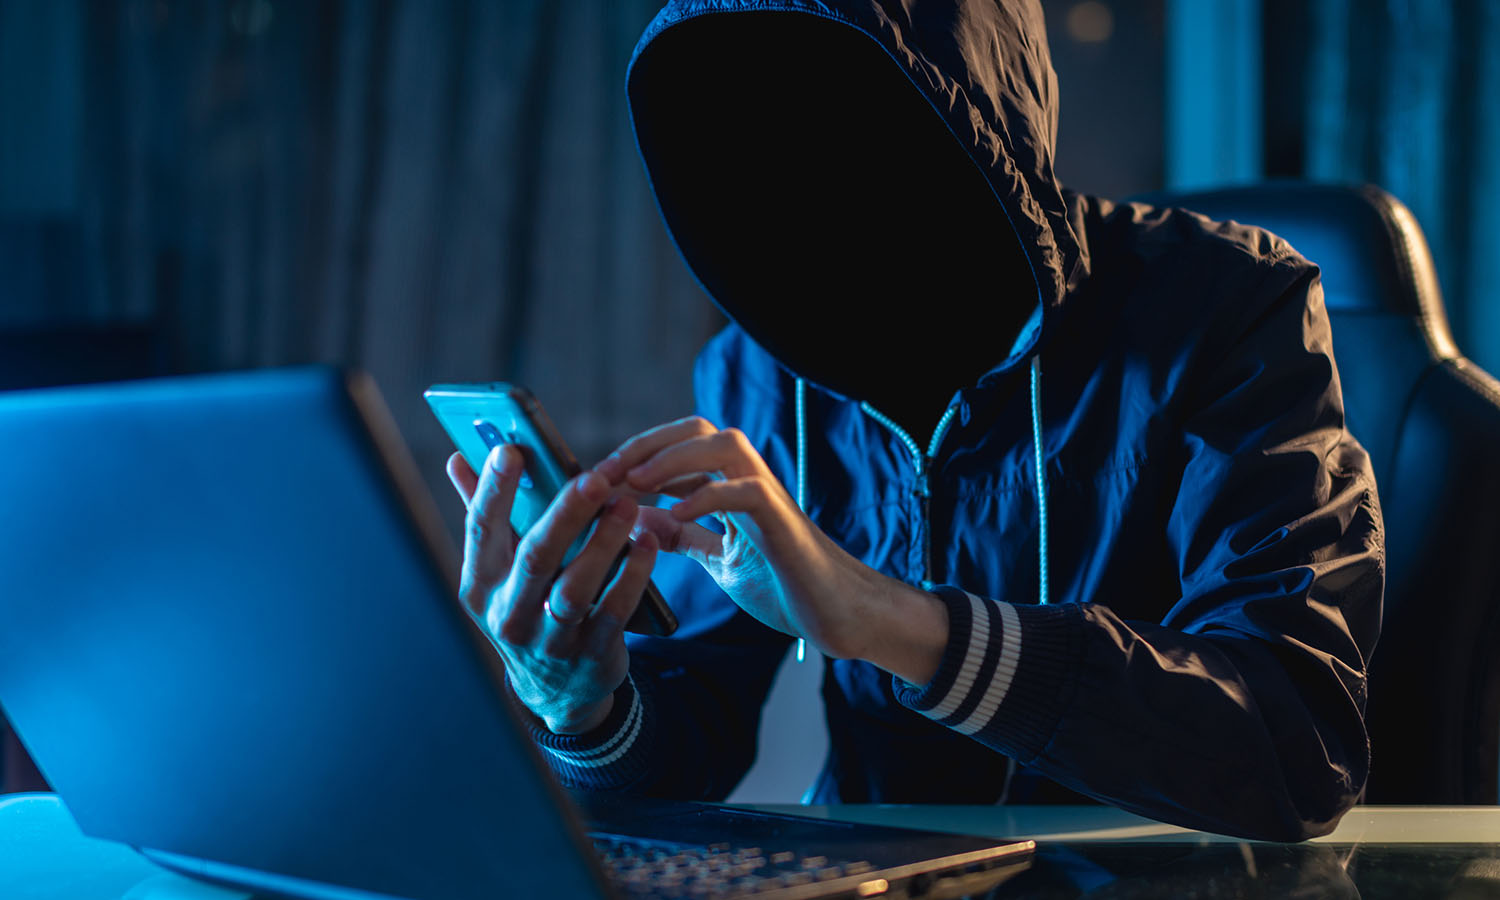 Cyber Hacker stealing information